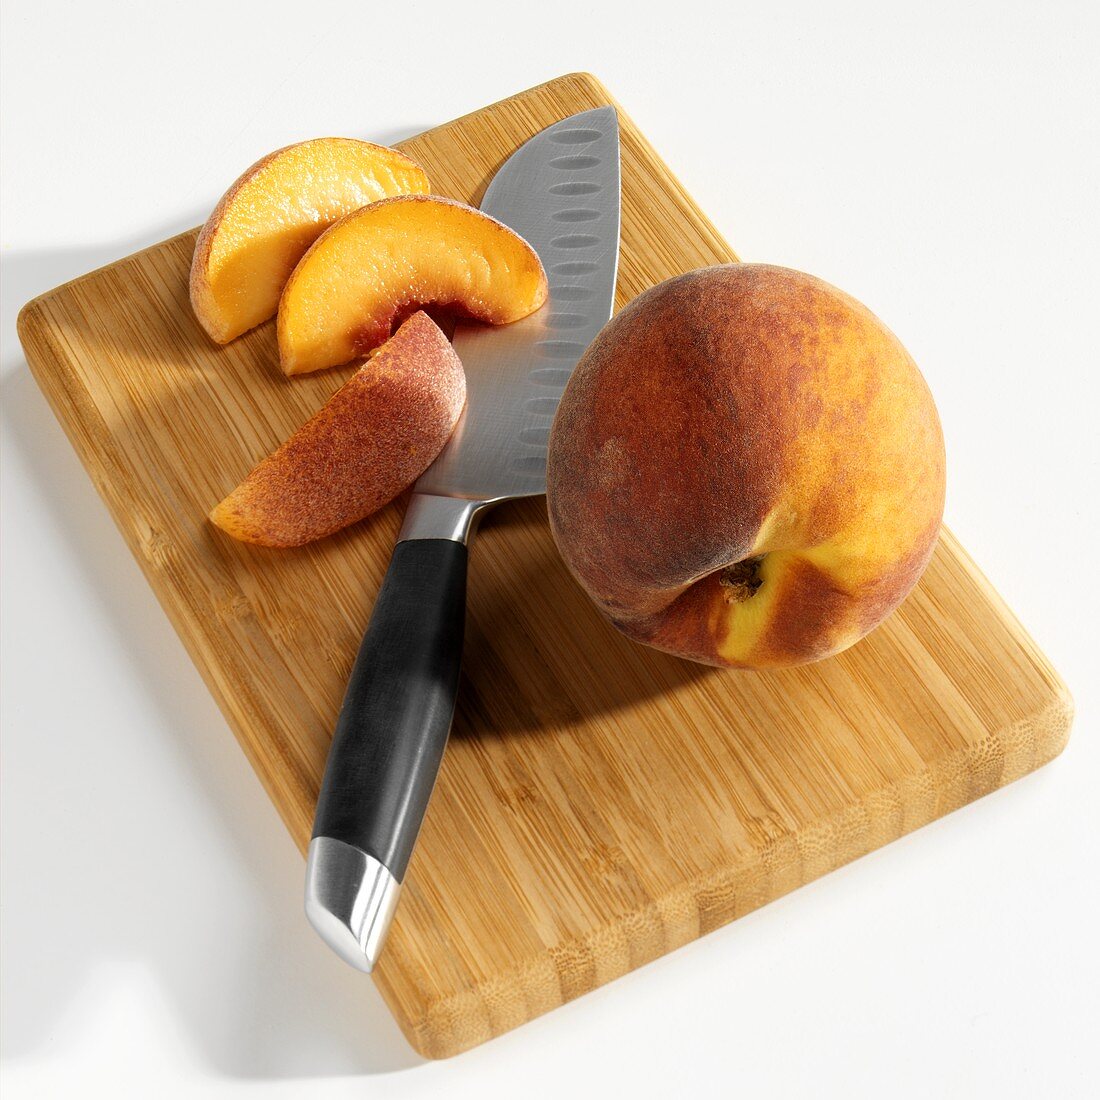 Ganzer Pfirsich und Pfirsichspalten auf Holzbrett mit Messer